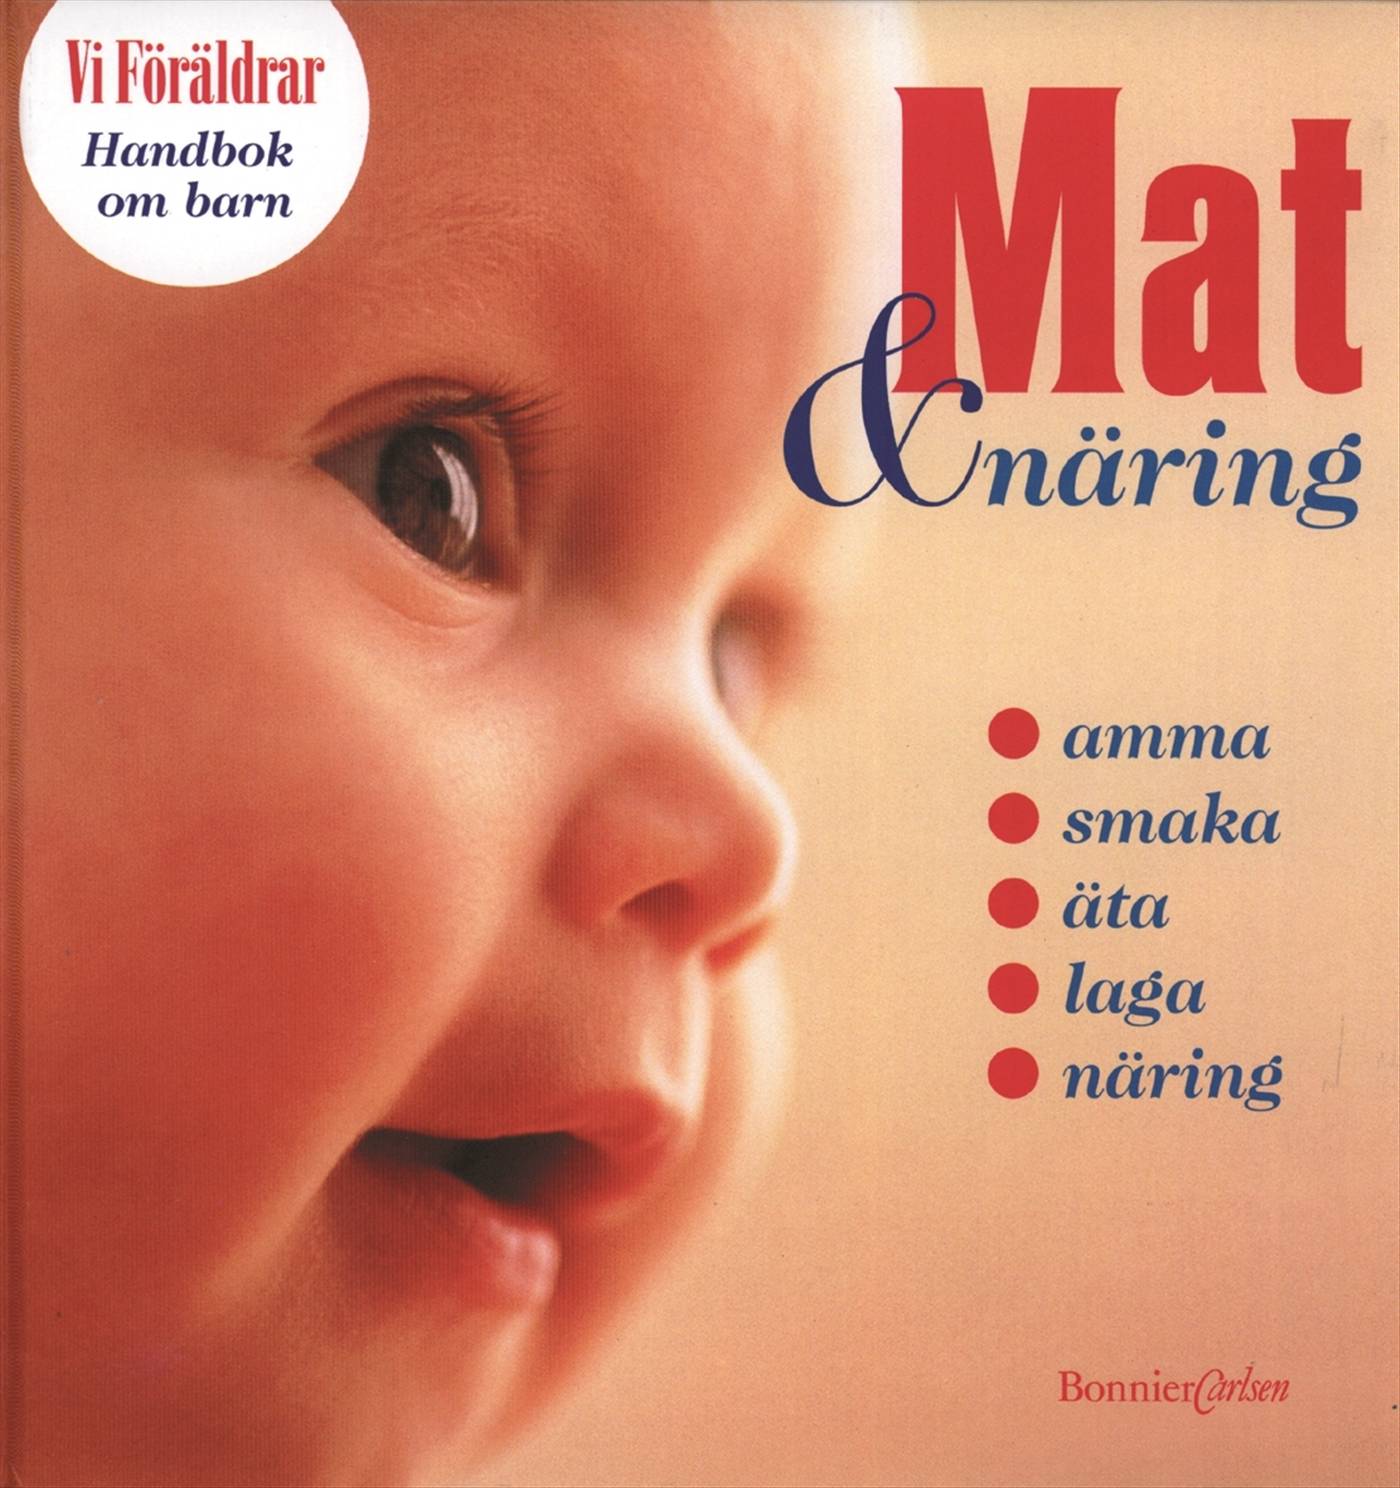 Handbok om barn 1: Mat & Näring